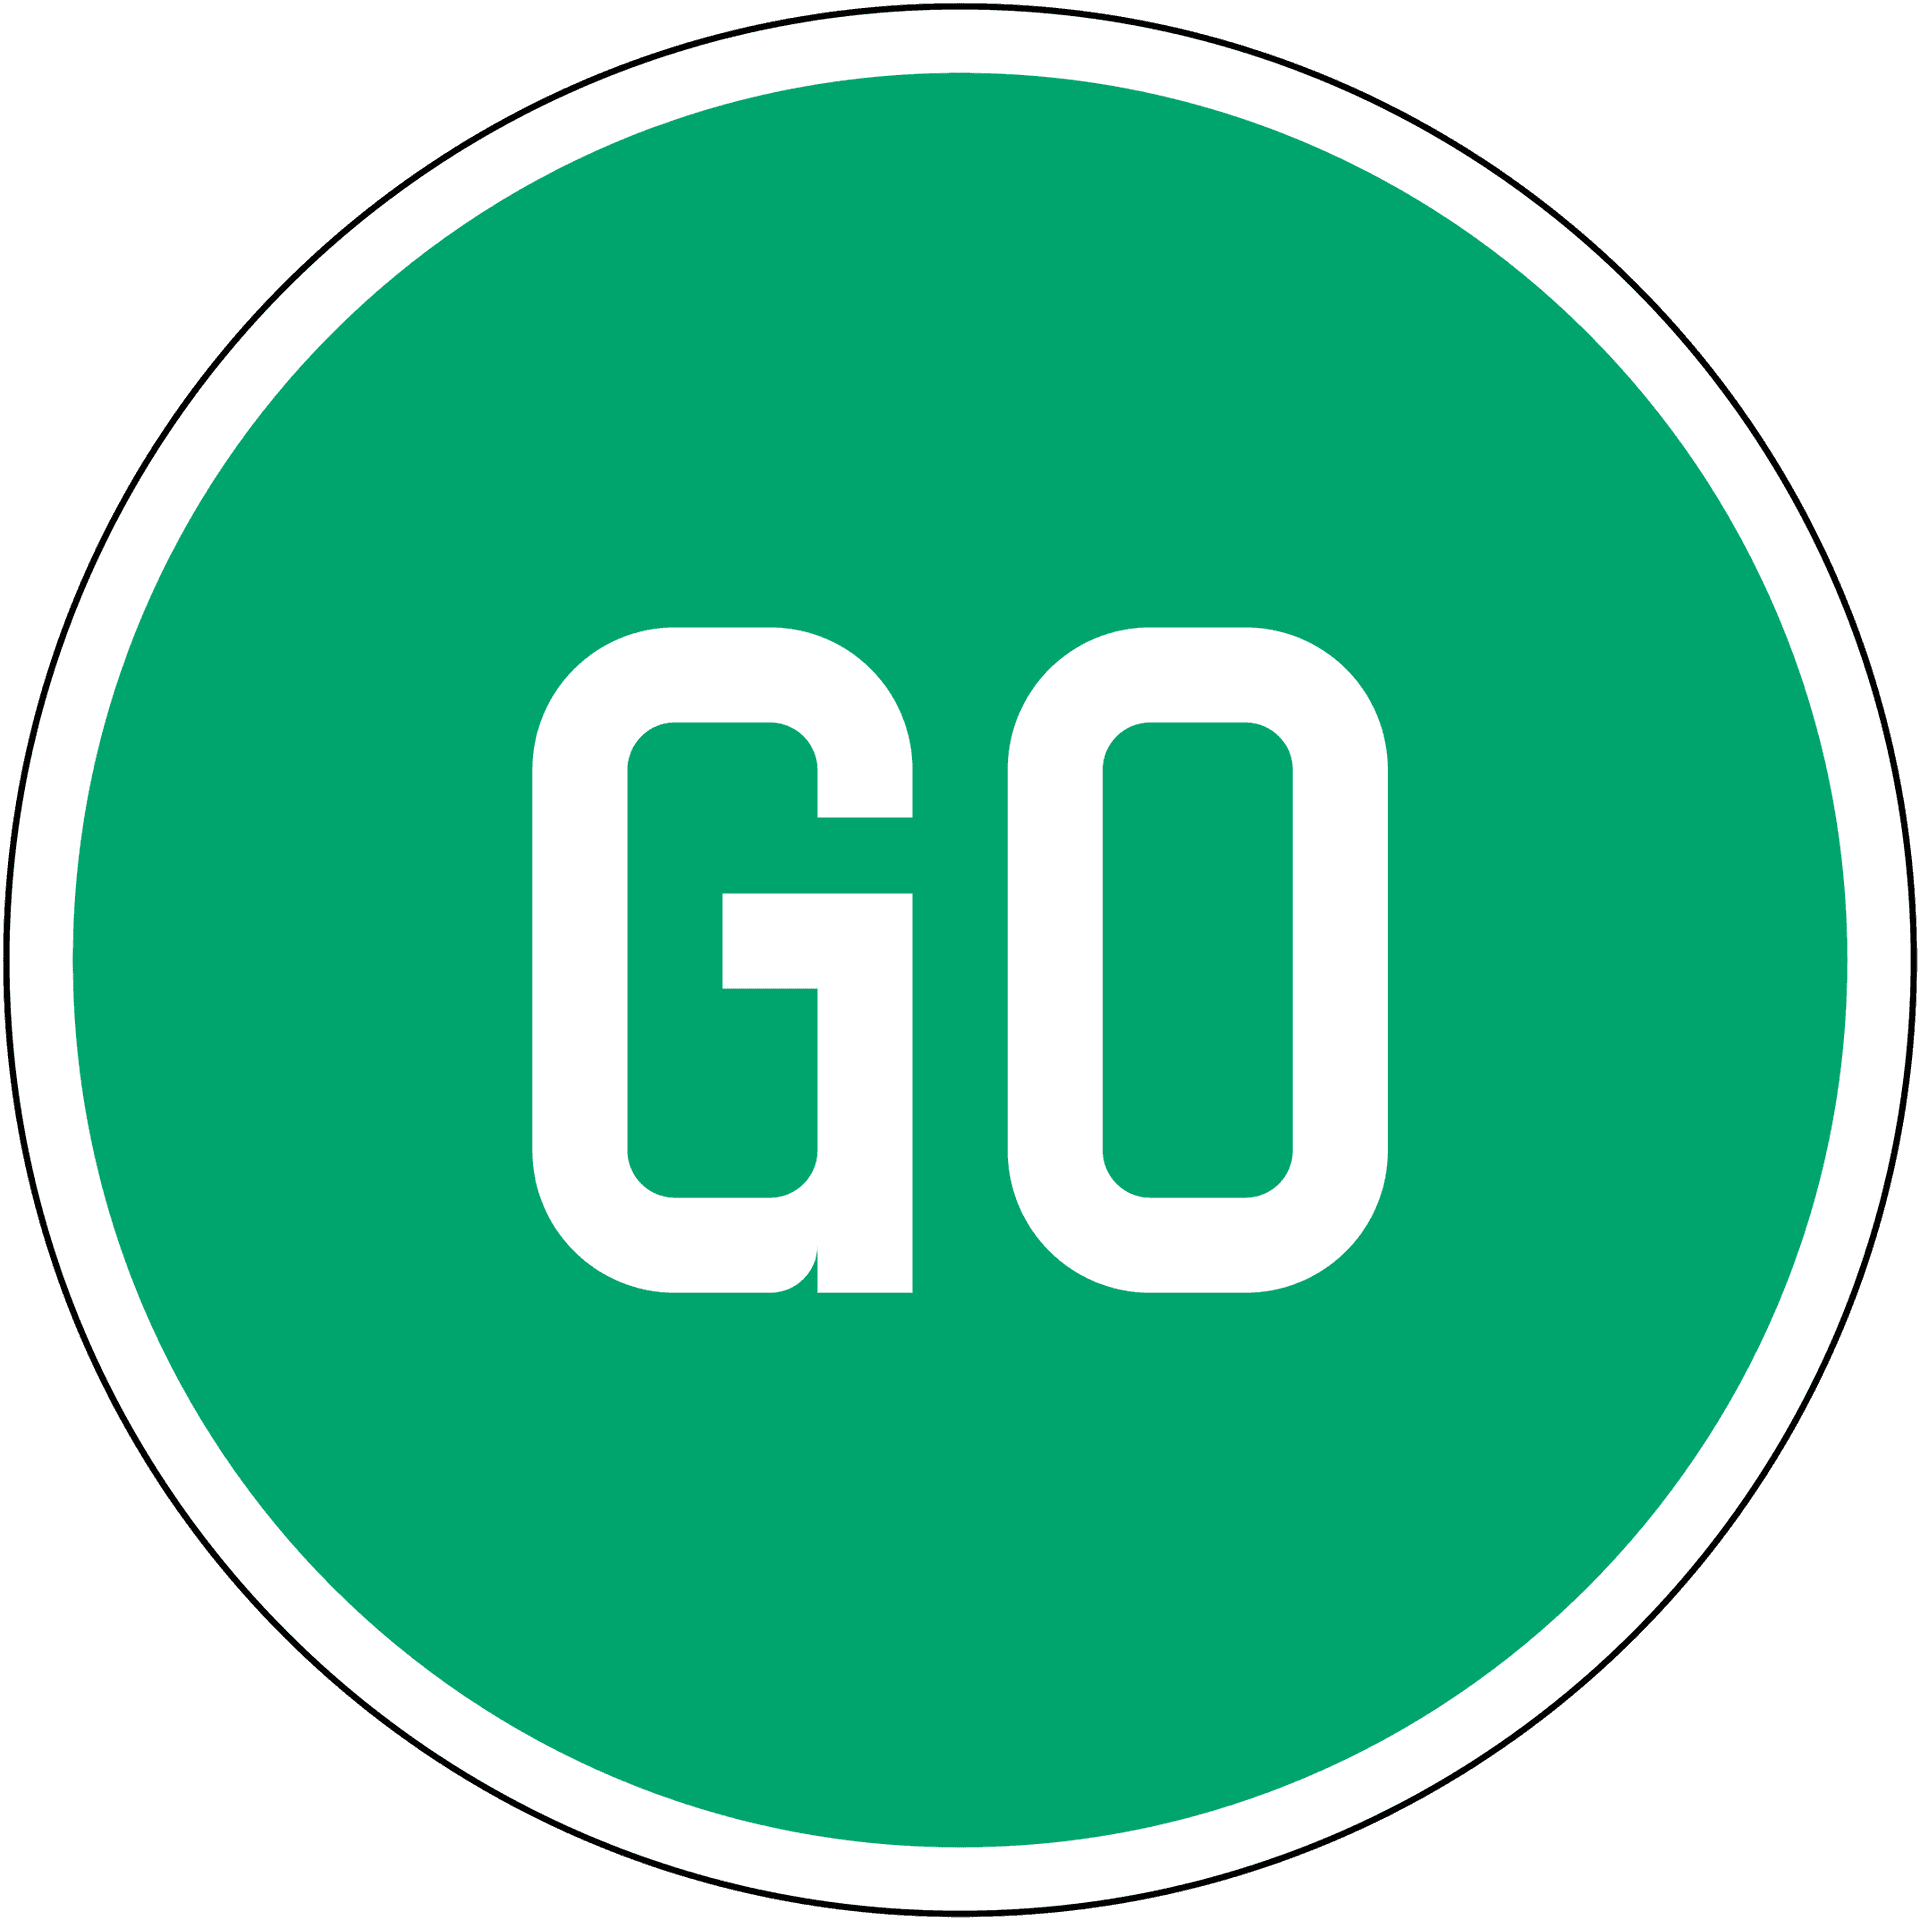 Green Go Sign Circle PNG image